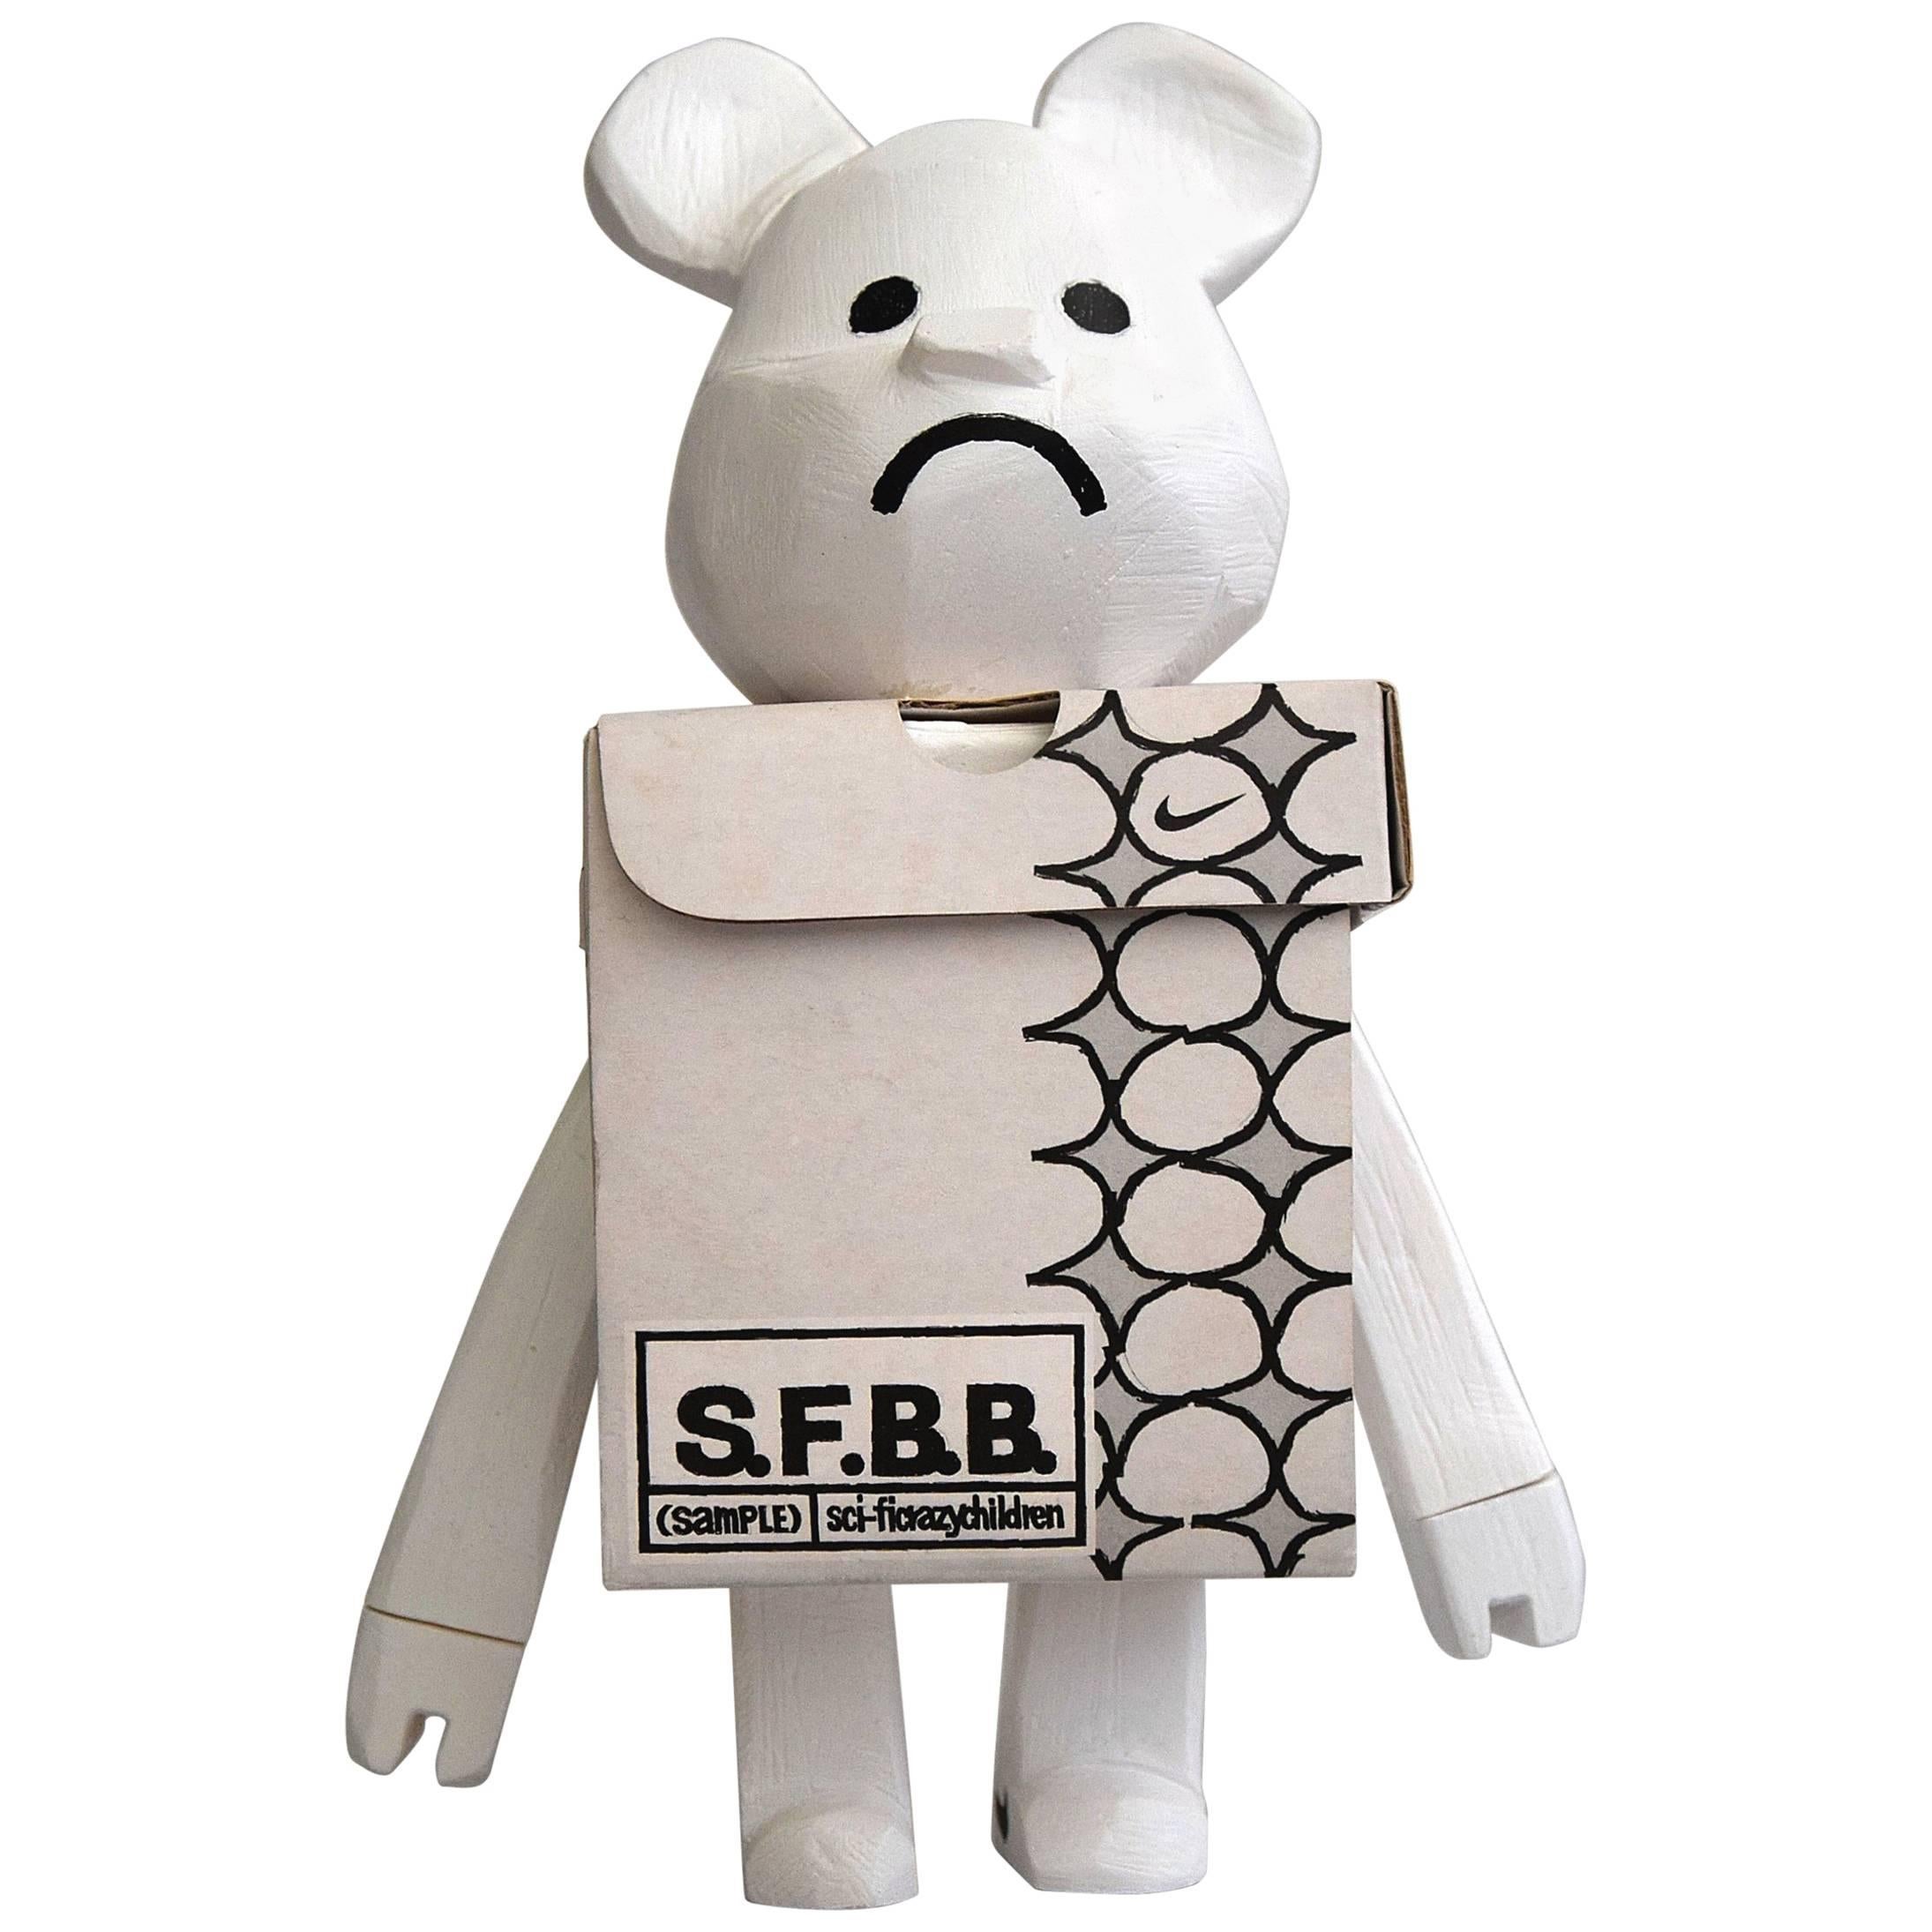 Designer-Spielzeug S.F.B.B.B.B. 'Sample' von Michael Lau, 2005 im Angebot